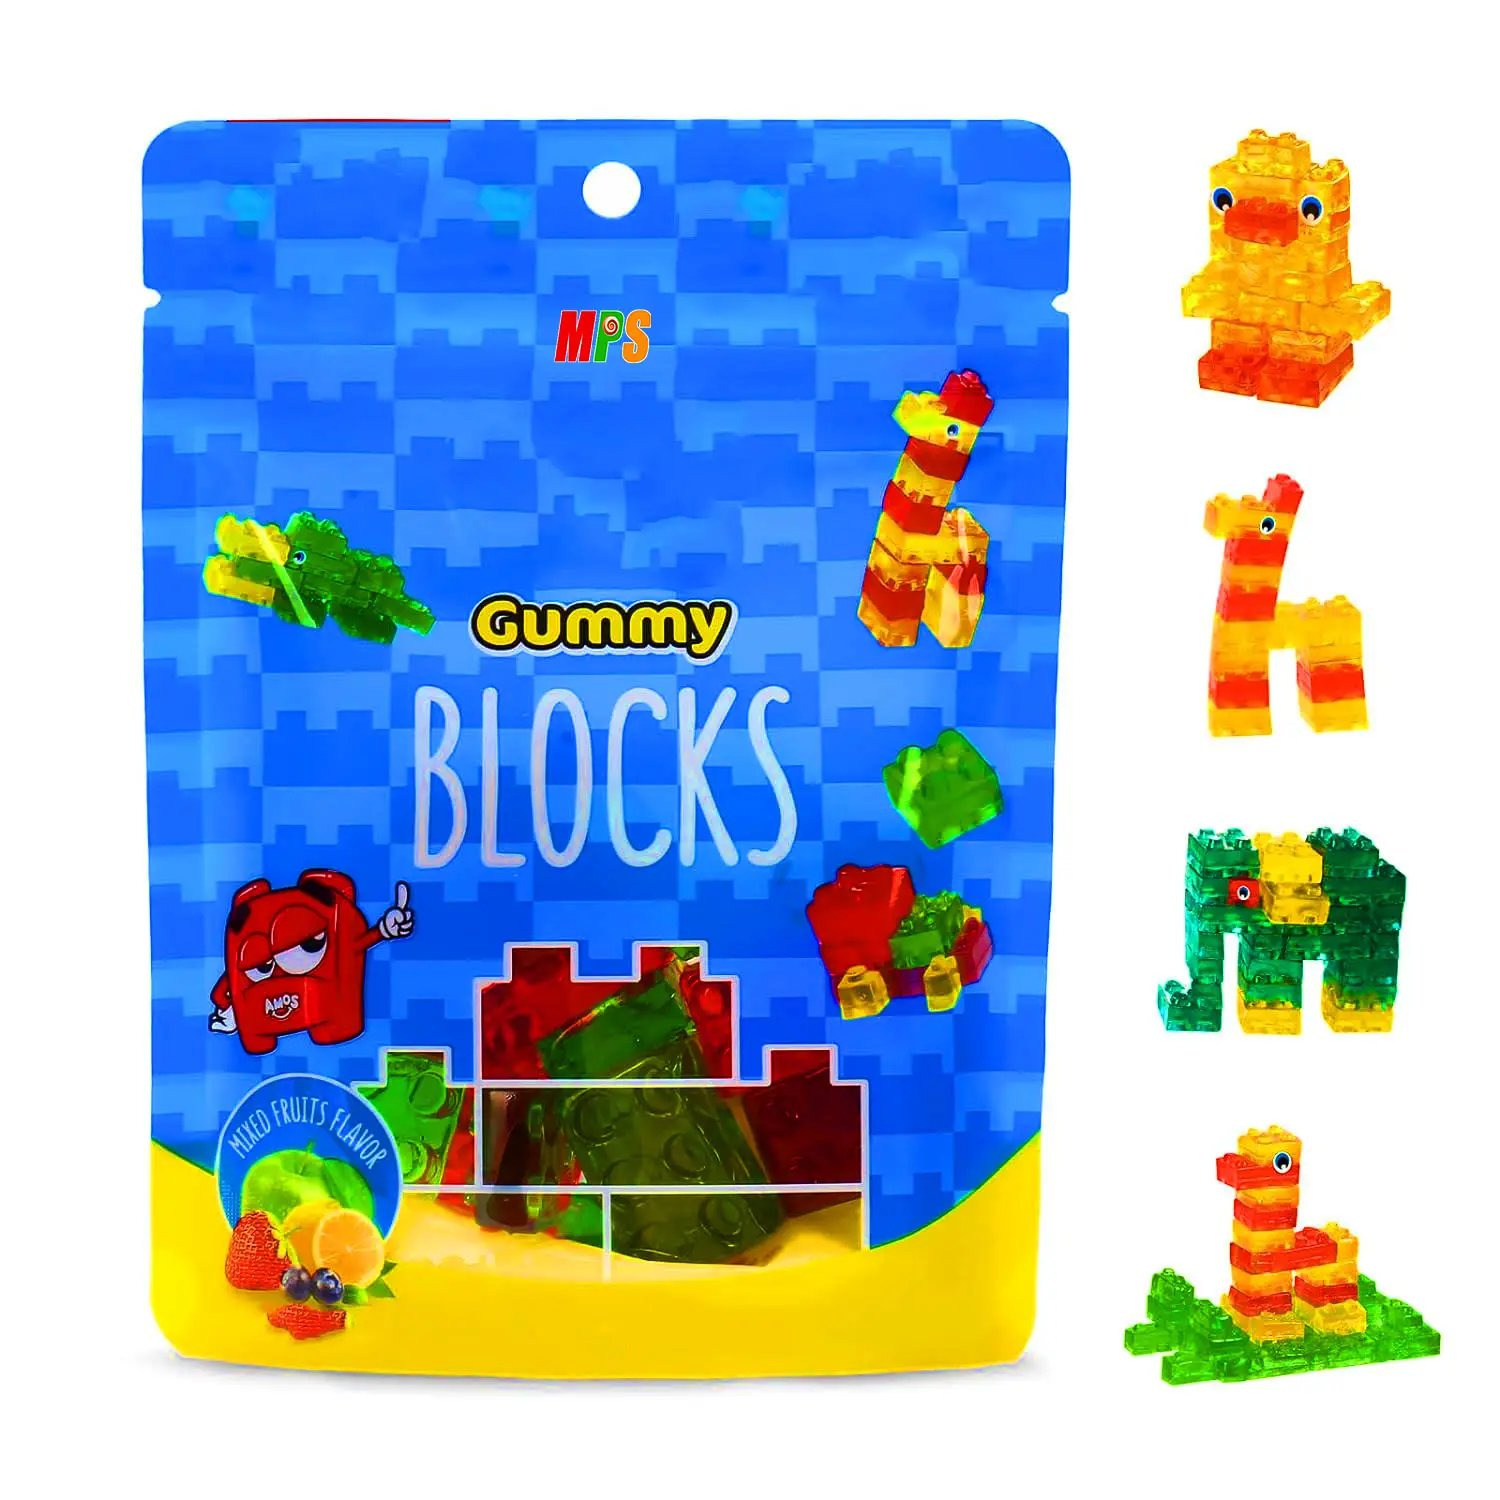 Oemミックスフルーツジュース3dグミキャンディーメーカー4dグミブロック型ビルディングブロックゼリーキャンディーおもちゃキッズスナック